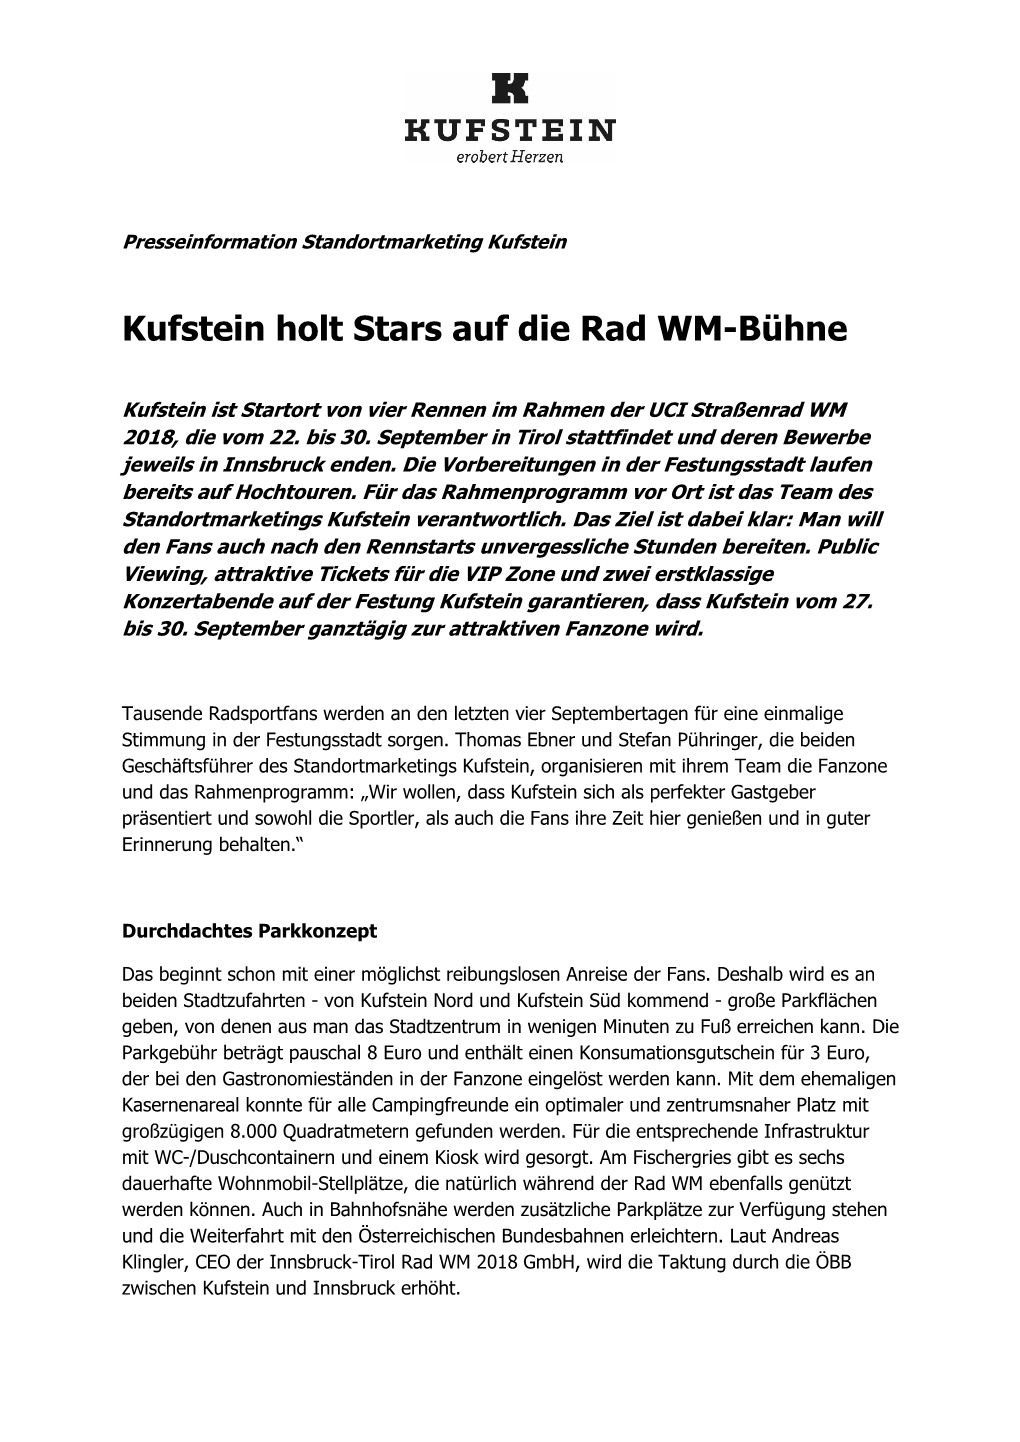 Kufstein Holt Stars Auf Die Rad WM-Bühne